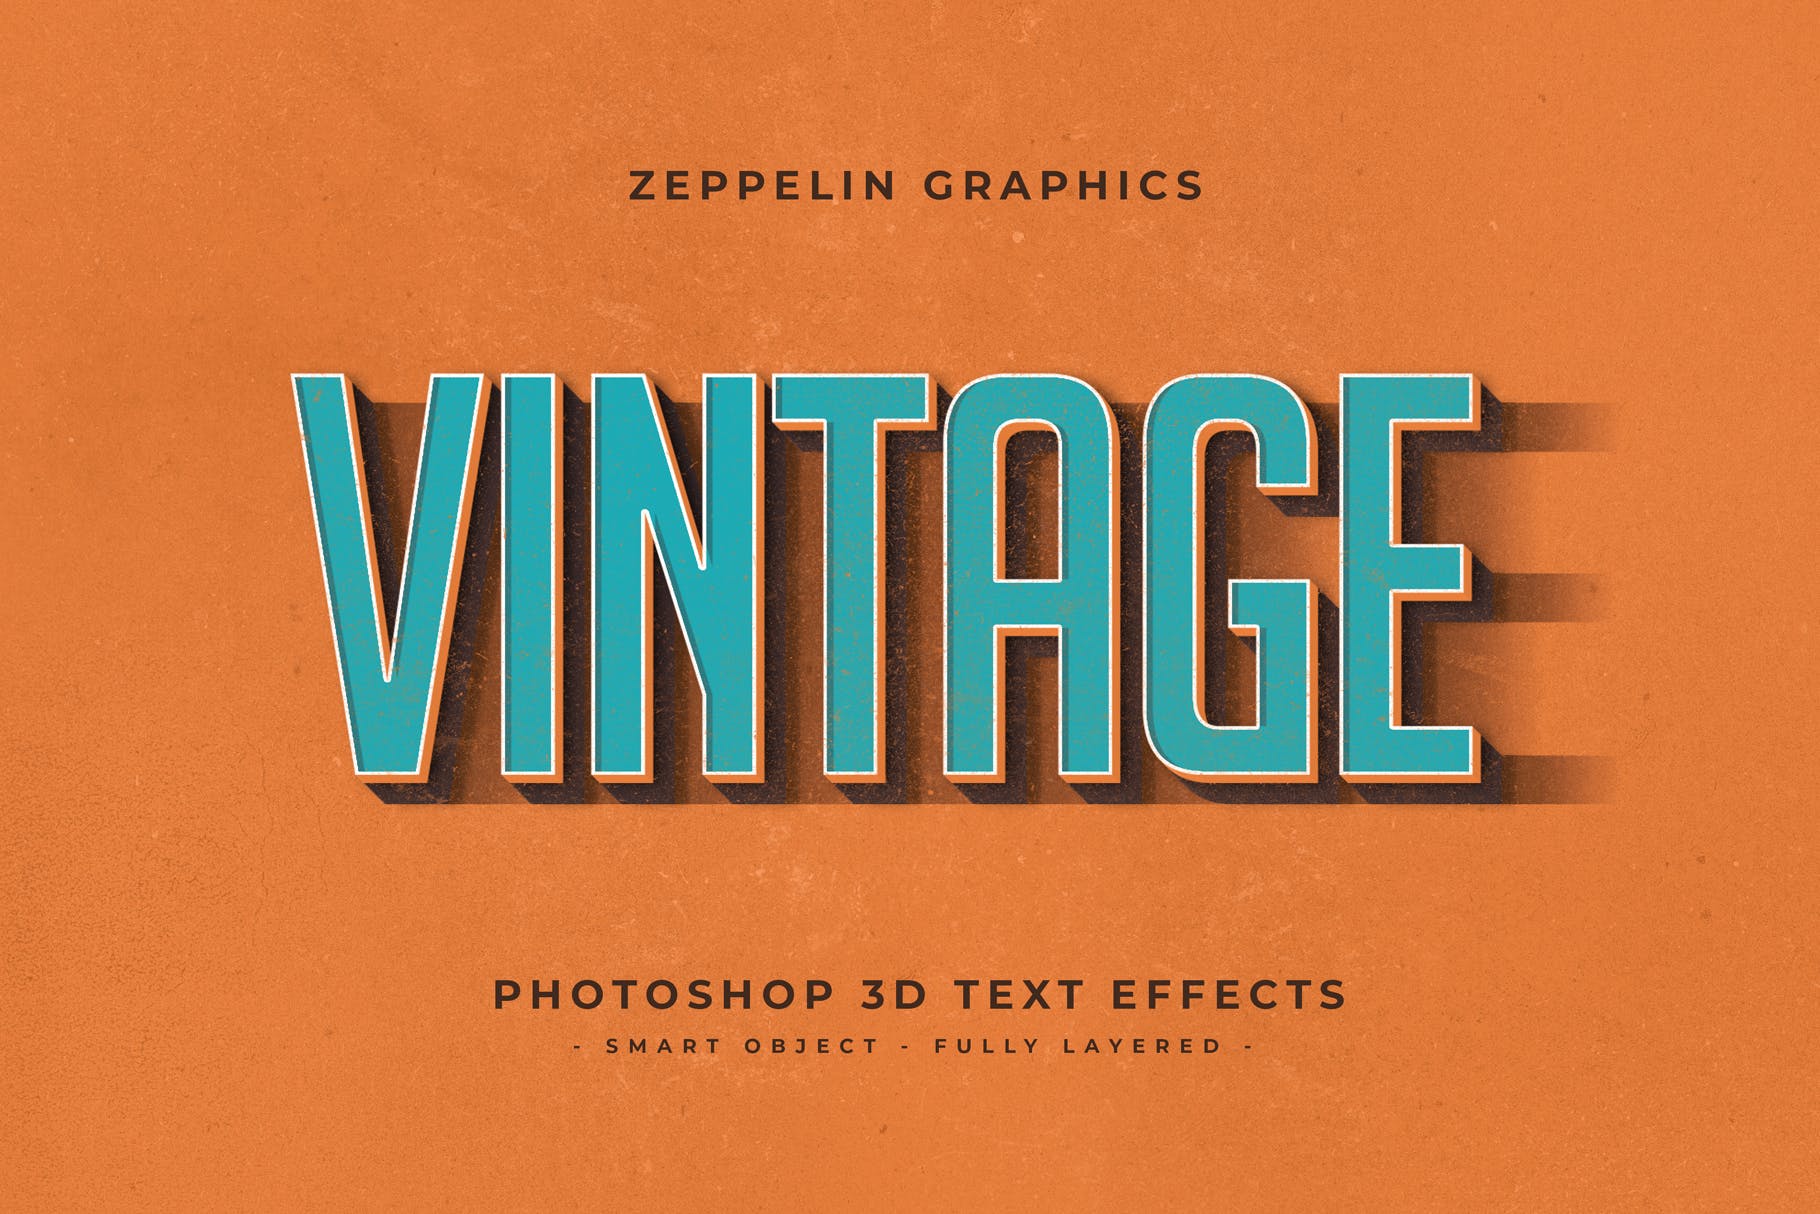 复古设计风格3D立体字体样式PSD分层模板v7 Vintage Text Effects Vol.7插图(8)